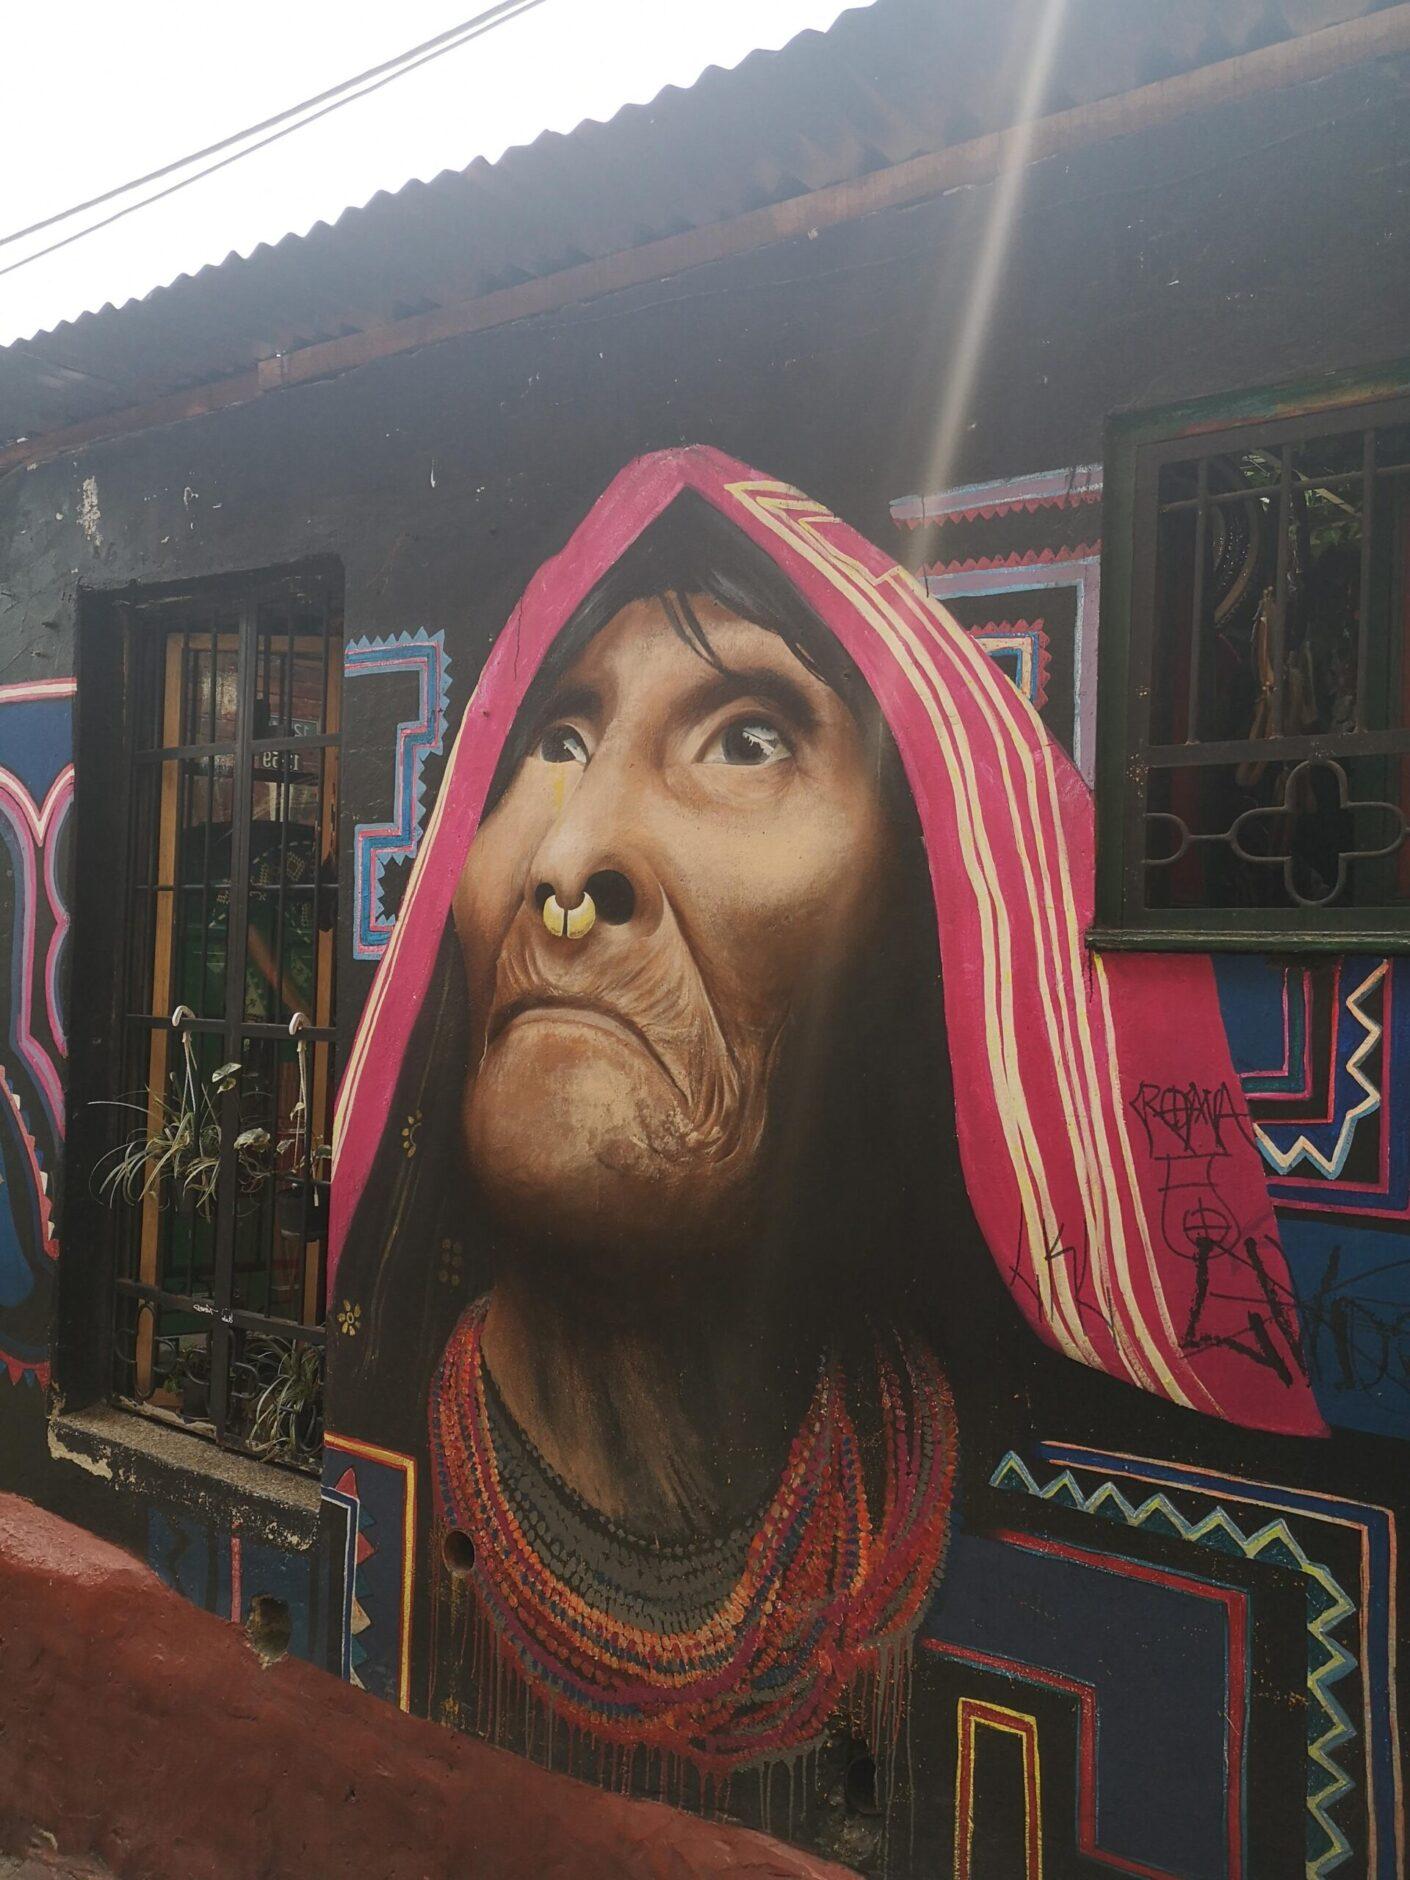 Graffiti an einer Hauswand, welches eine einheimische Frau zeigt